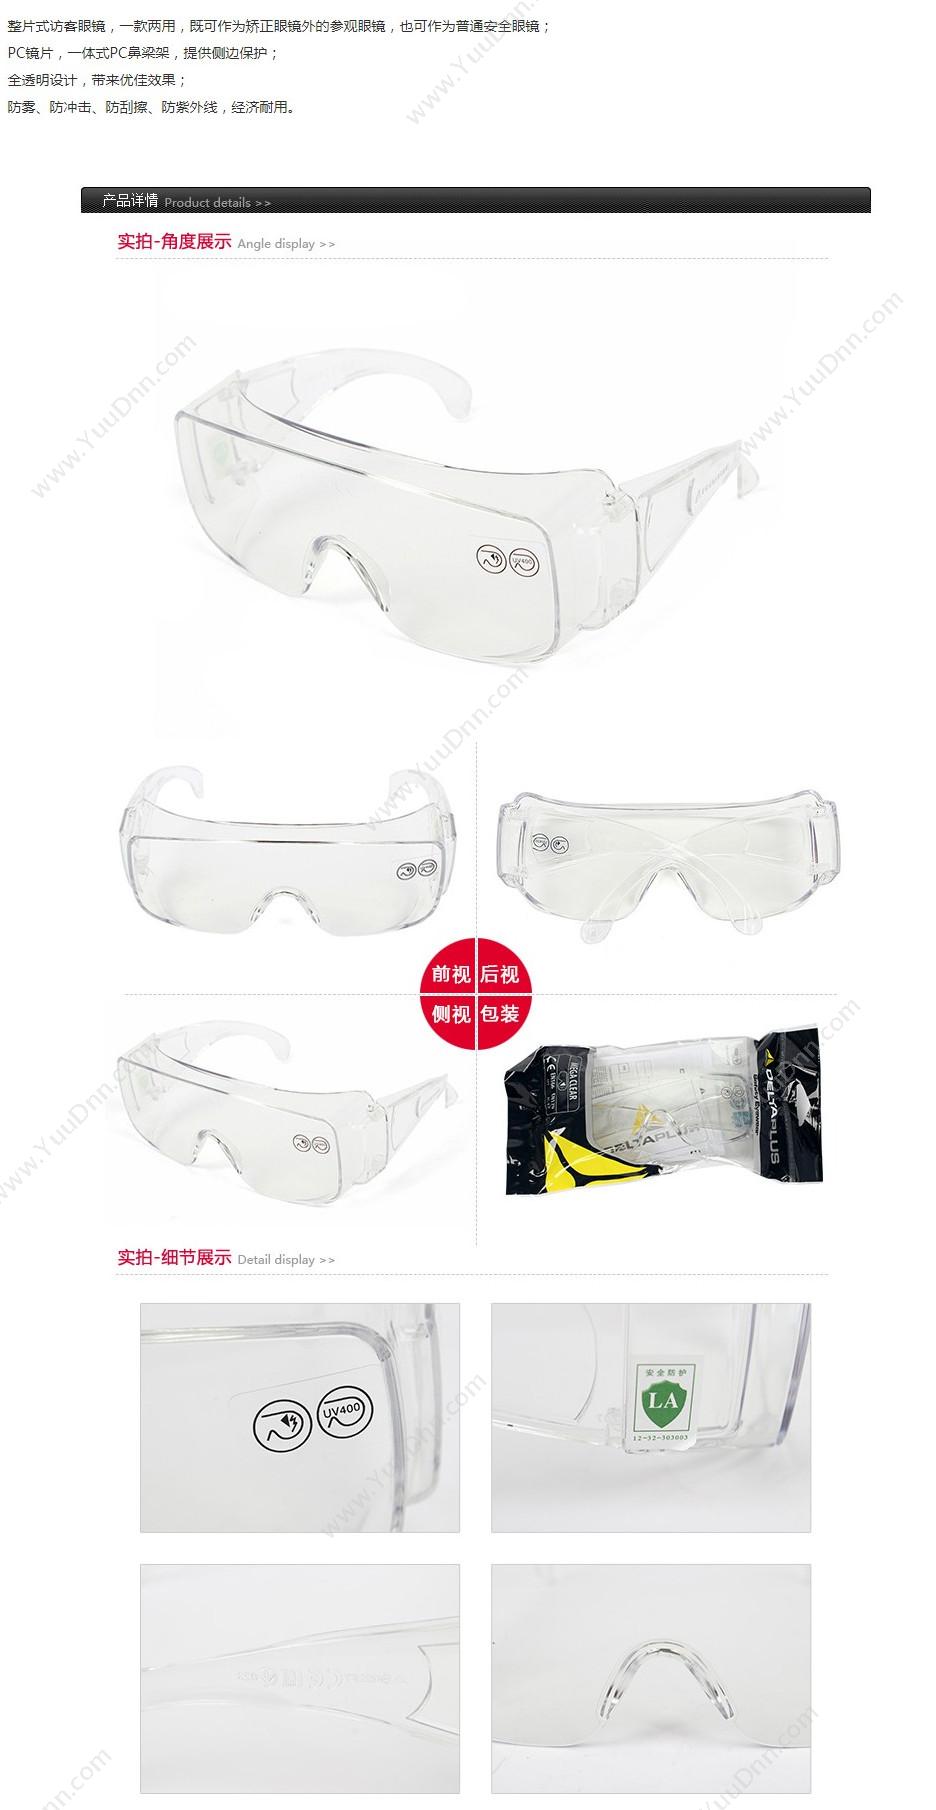 代尔塔 Delta 101131 外框安全眼镜 MEGA CLEAR 透明白色 10个/盒 防刮擦 防护眼镜